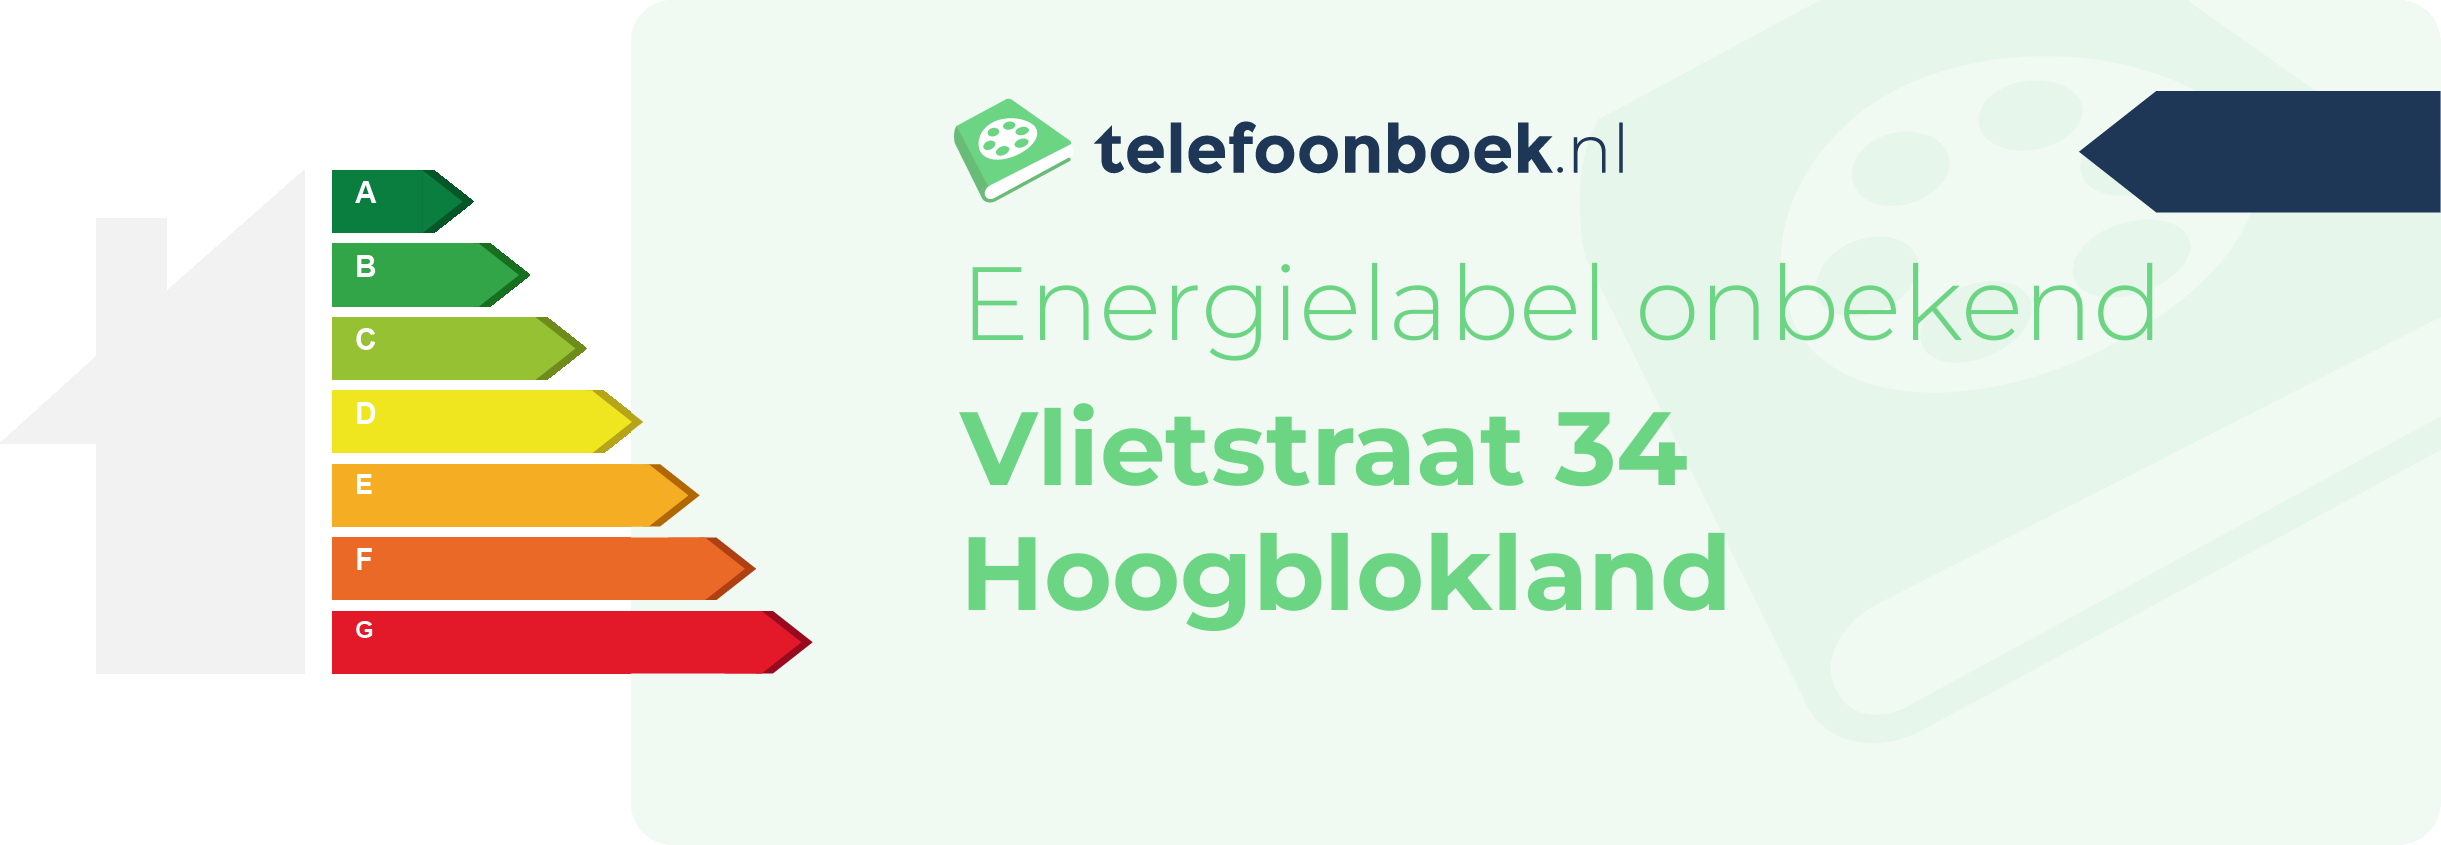 Energielabel Vlietstraat 34 Hoogblokland